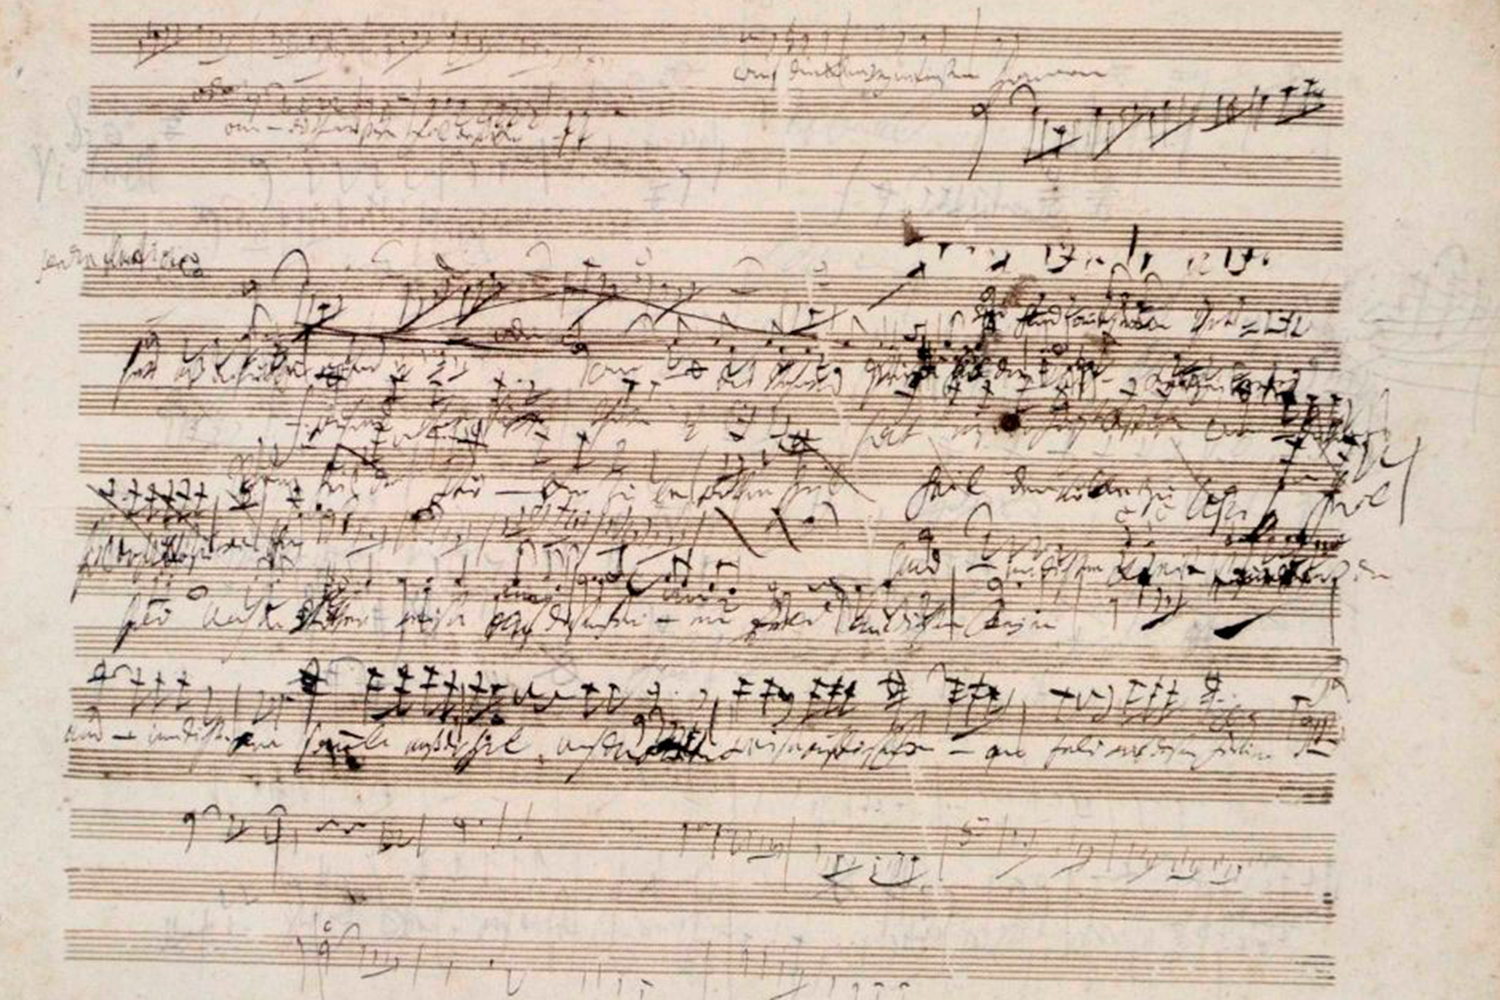 Subastan una partitura manuscrita de Beethoven por 100.000 dólares